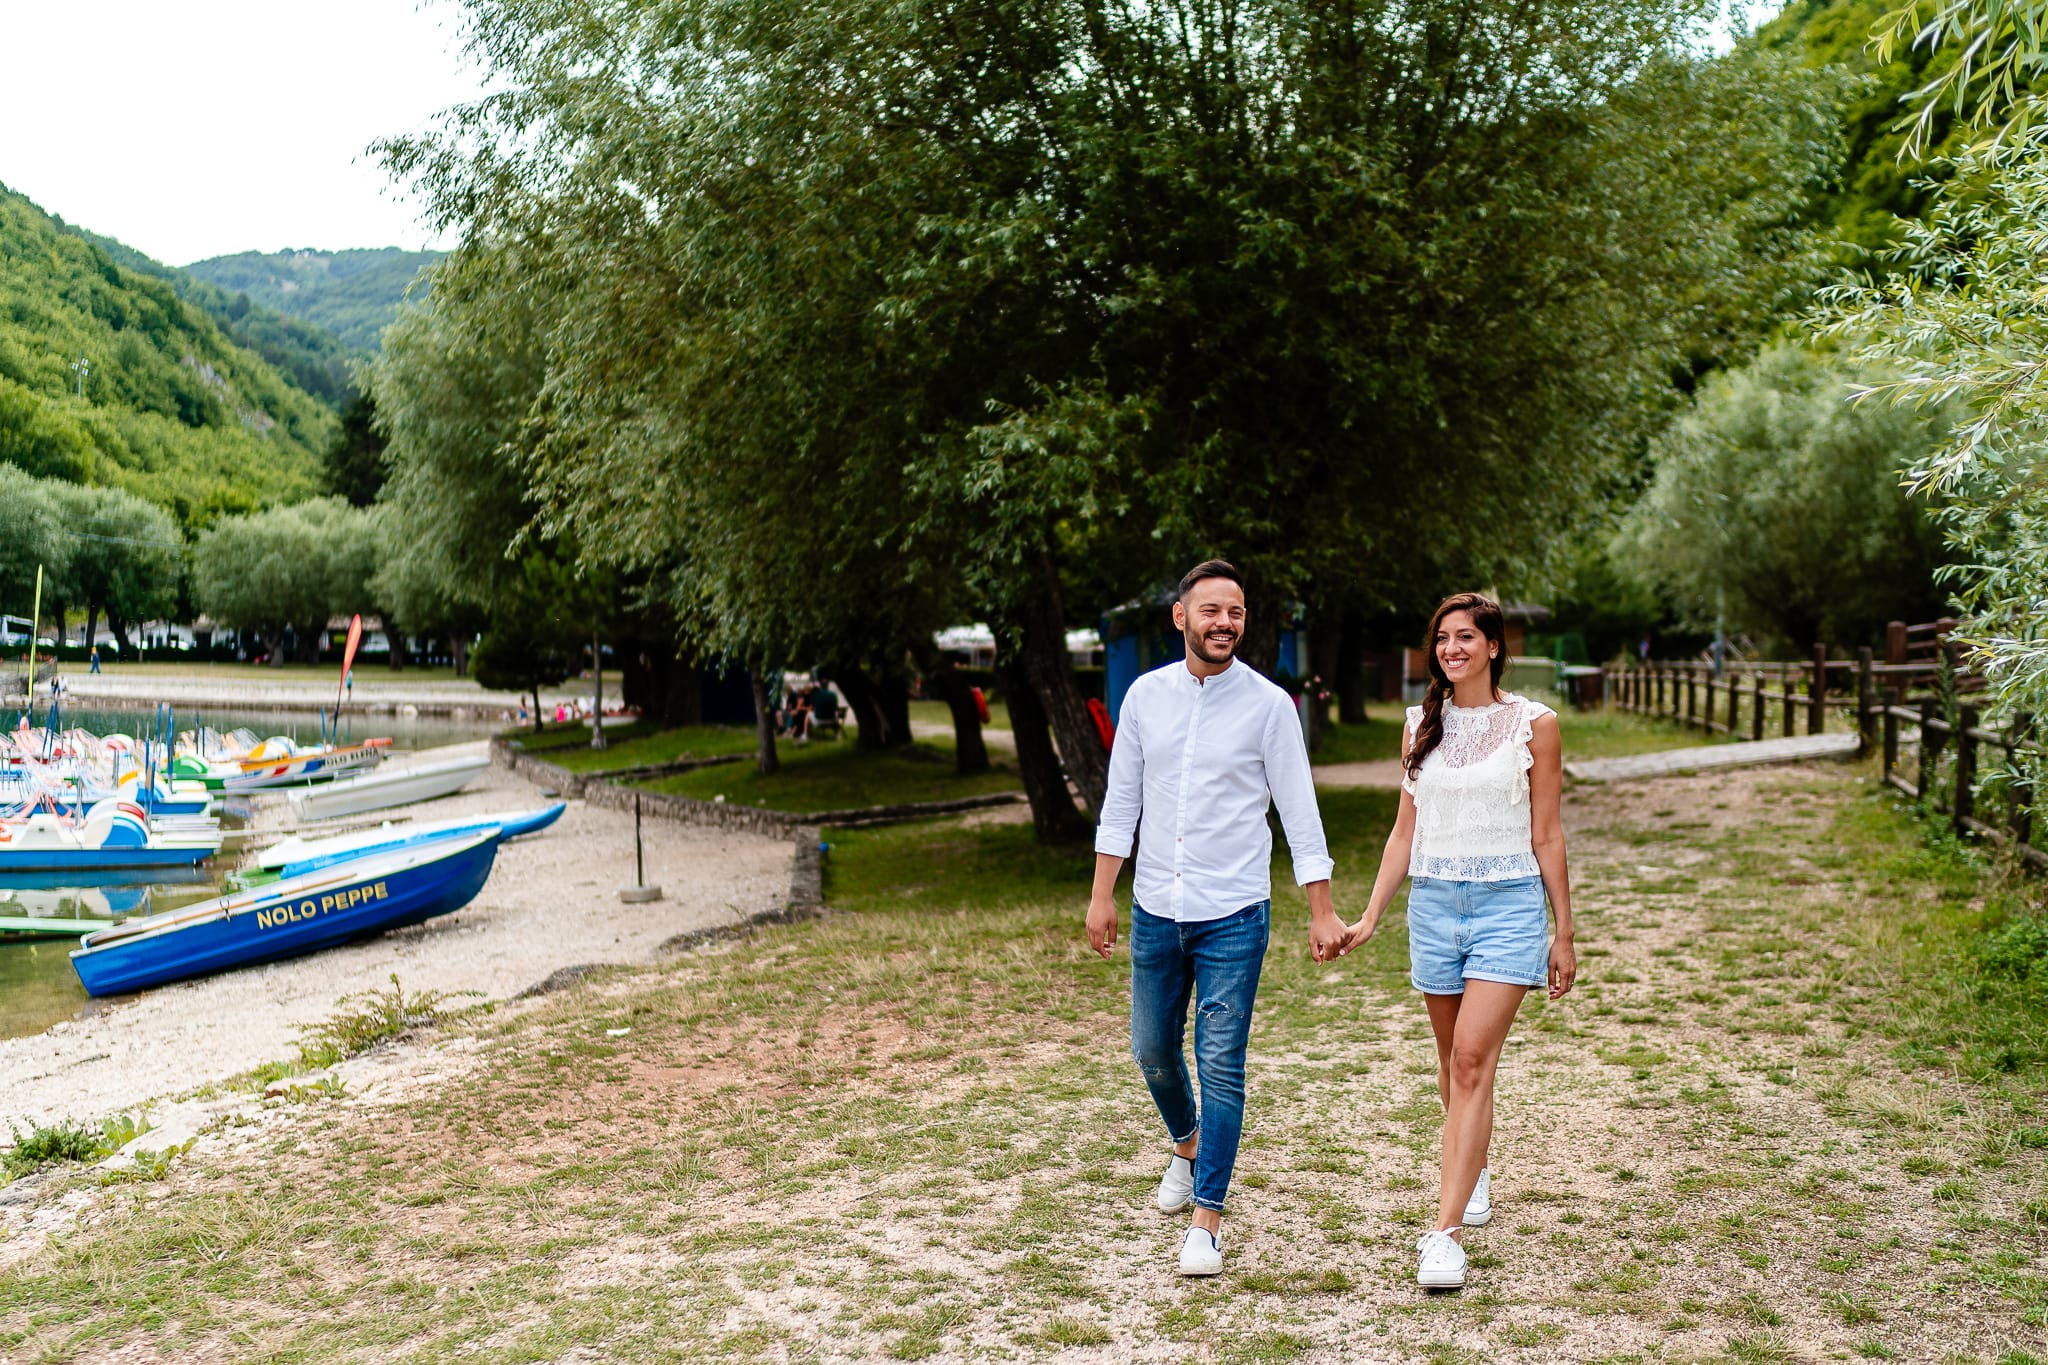 Tania Matteo Prematrimoniale Abruzzo Lago di Scanno Sulmona coppia cammina mano nella mano